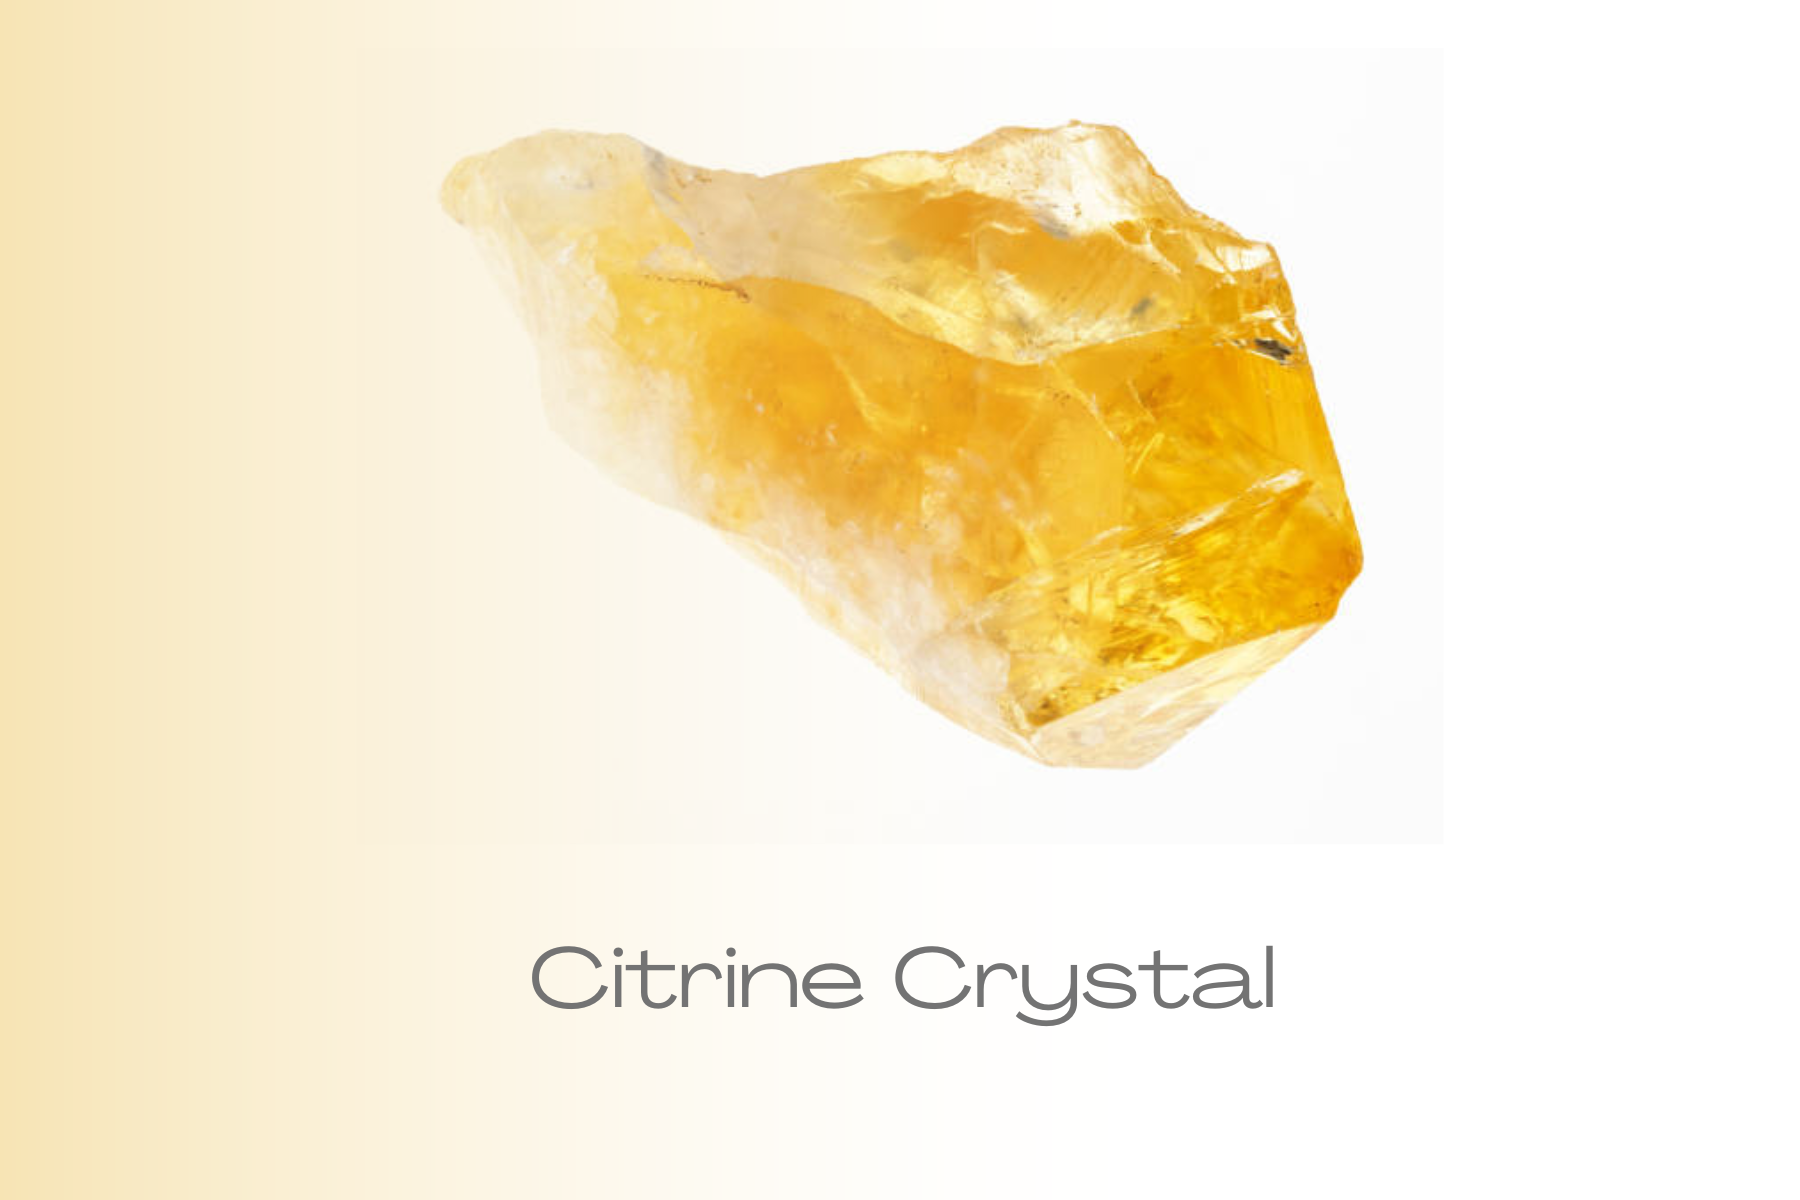 Rock-formed Citrine crystal